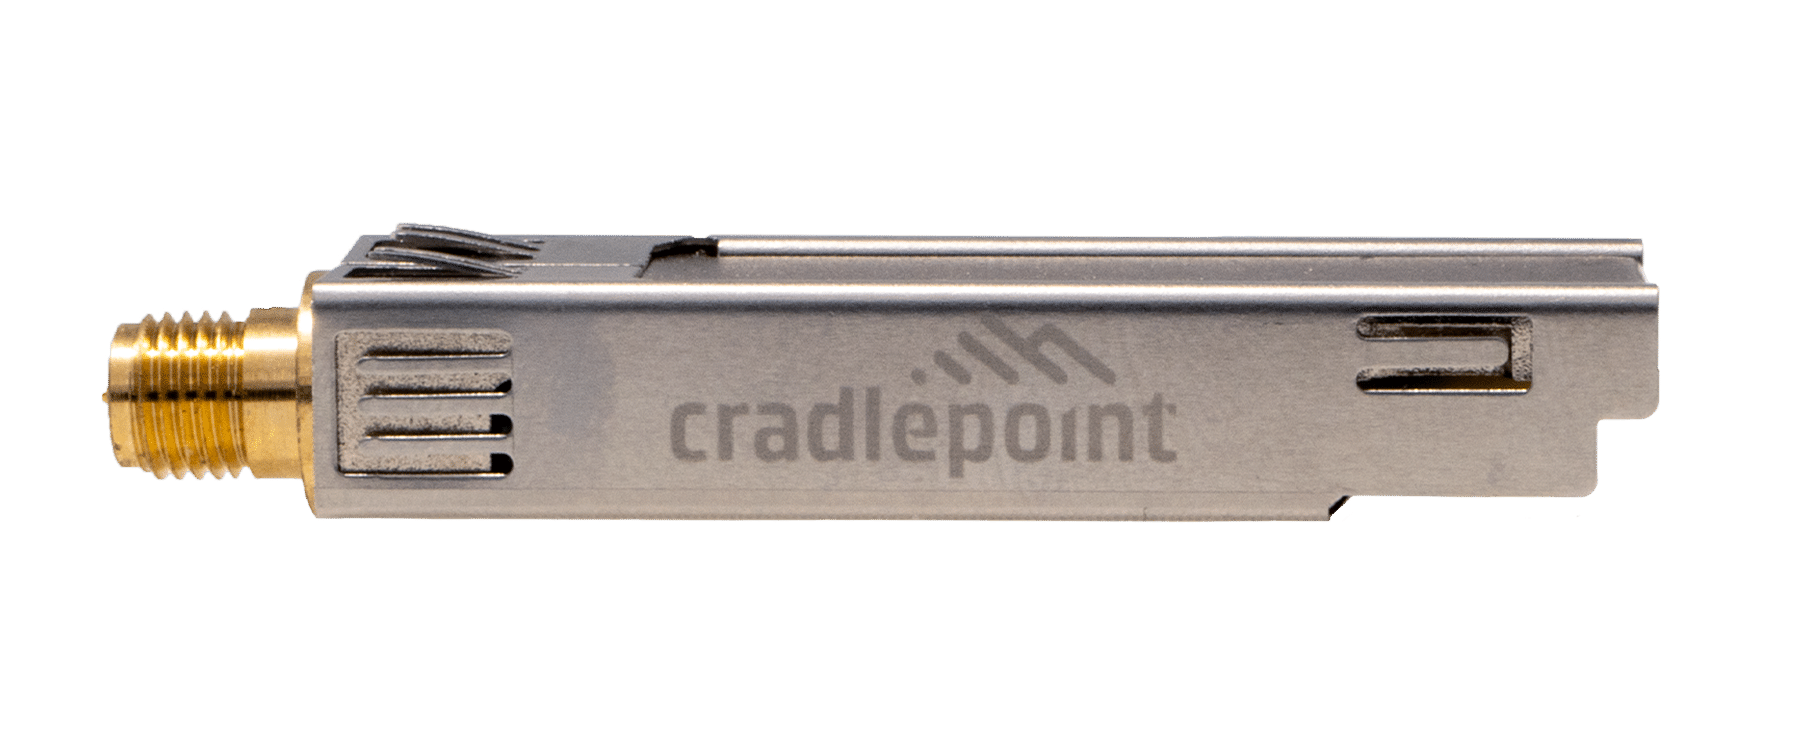 Cradlepoint MC20BT Bluetooth Module for E300 and E3000